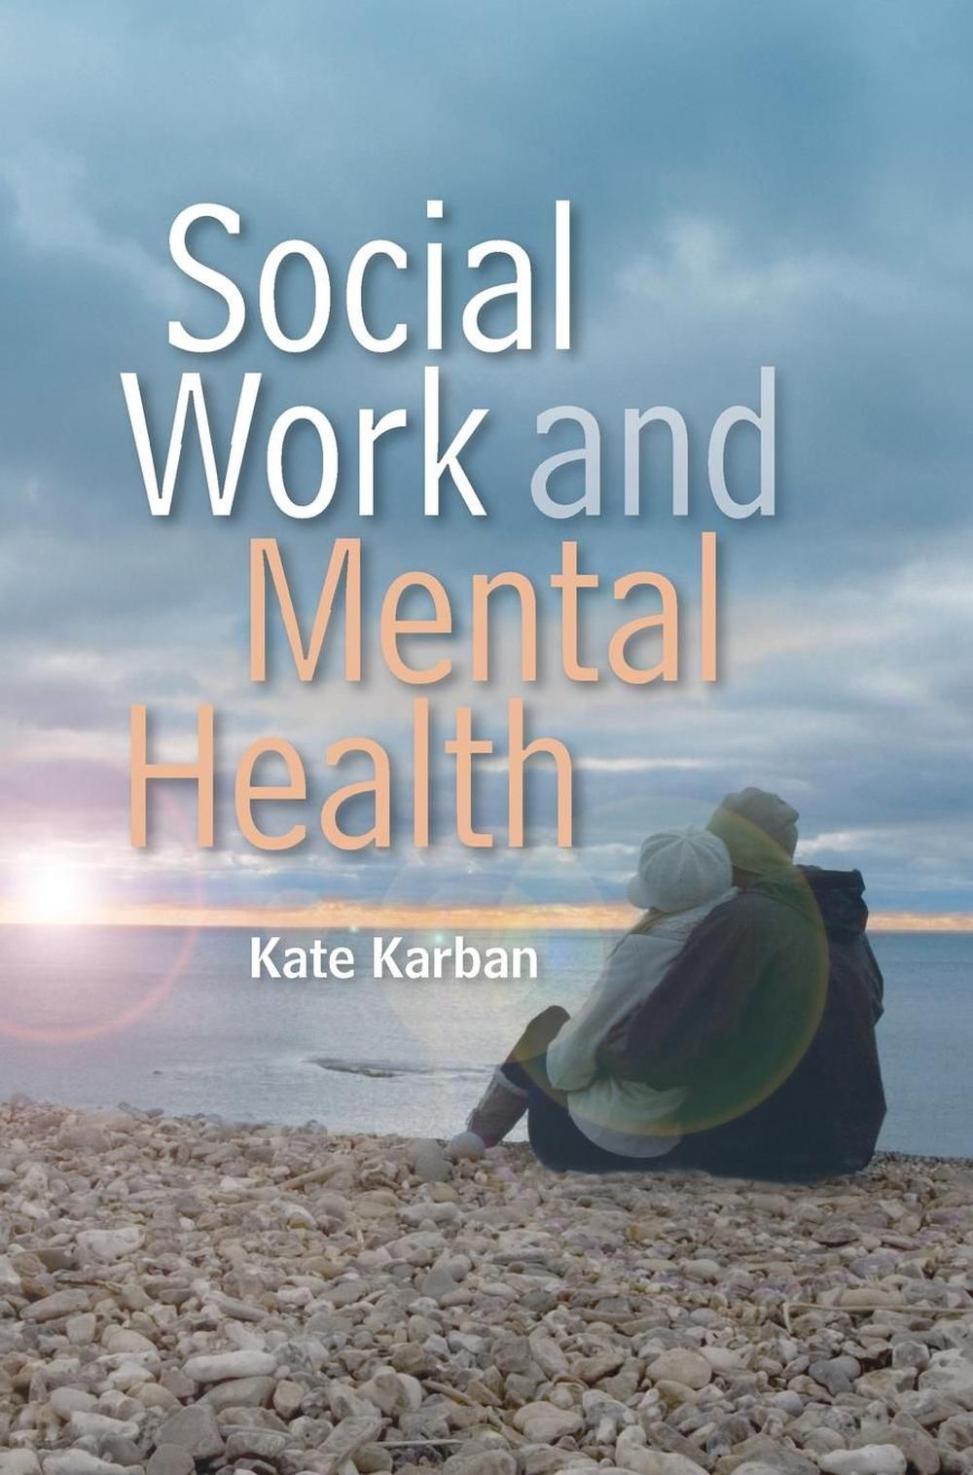 Comment les travailleurs sociaux peuvent-ils utiliser les critiques de livres pour promouvoir le changement social et sensibiliser aux problèmes importants ?